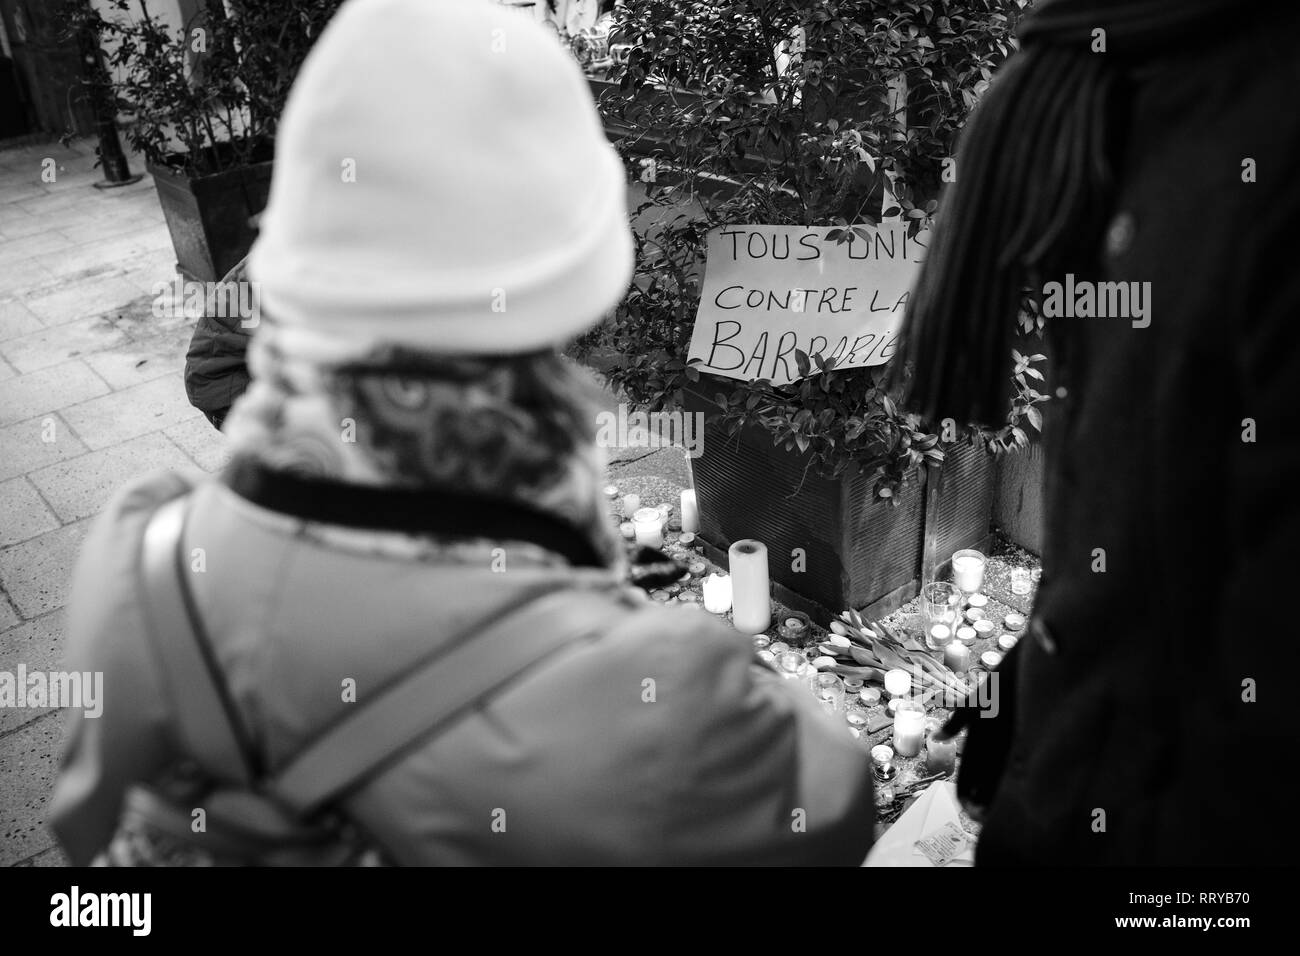 Strasburgo, Francia - Dic 13, 2018: persone che guardano tutti uniti contro la barbarie messaggio su Rue des Orfevres veglia con più luce di candele fiori e messaggi per le vittime degli attentati Cherif Chekatt al mercatino di Natale Foto Stock